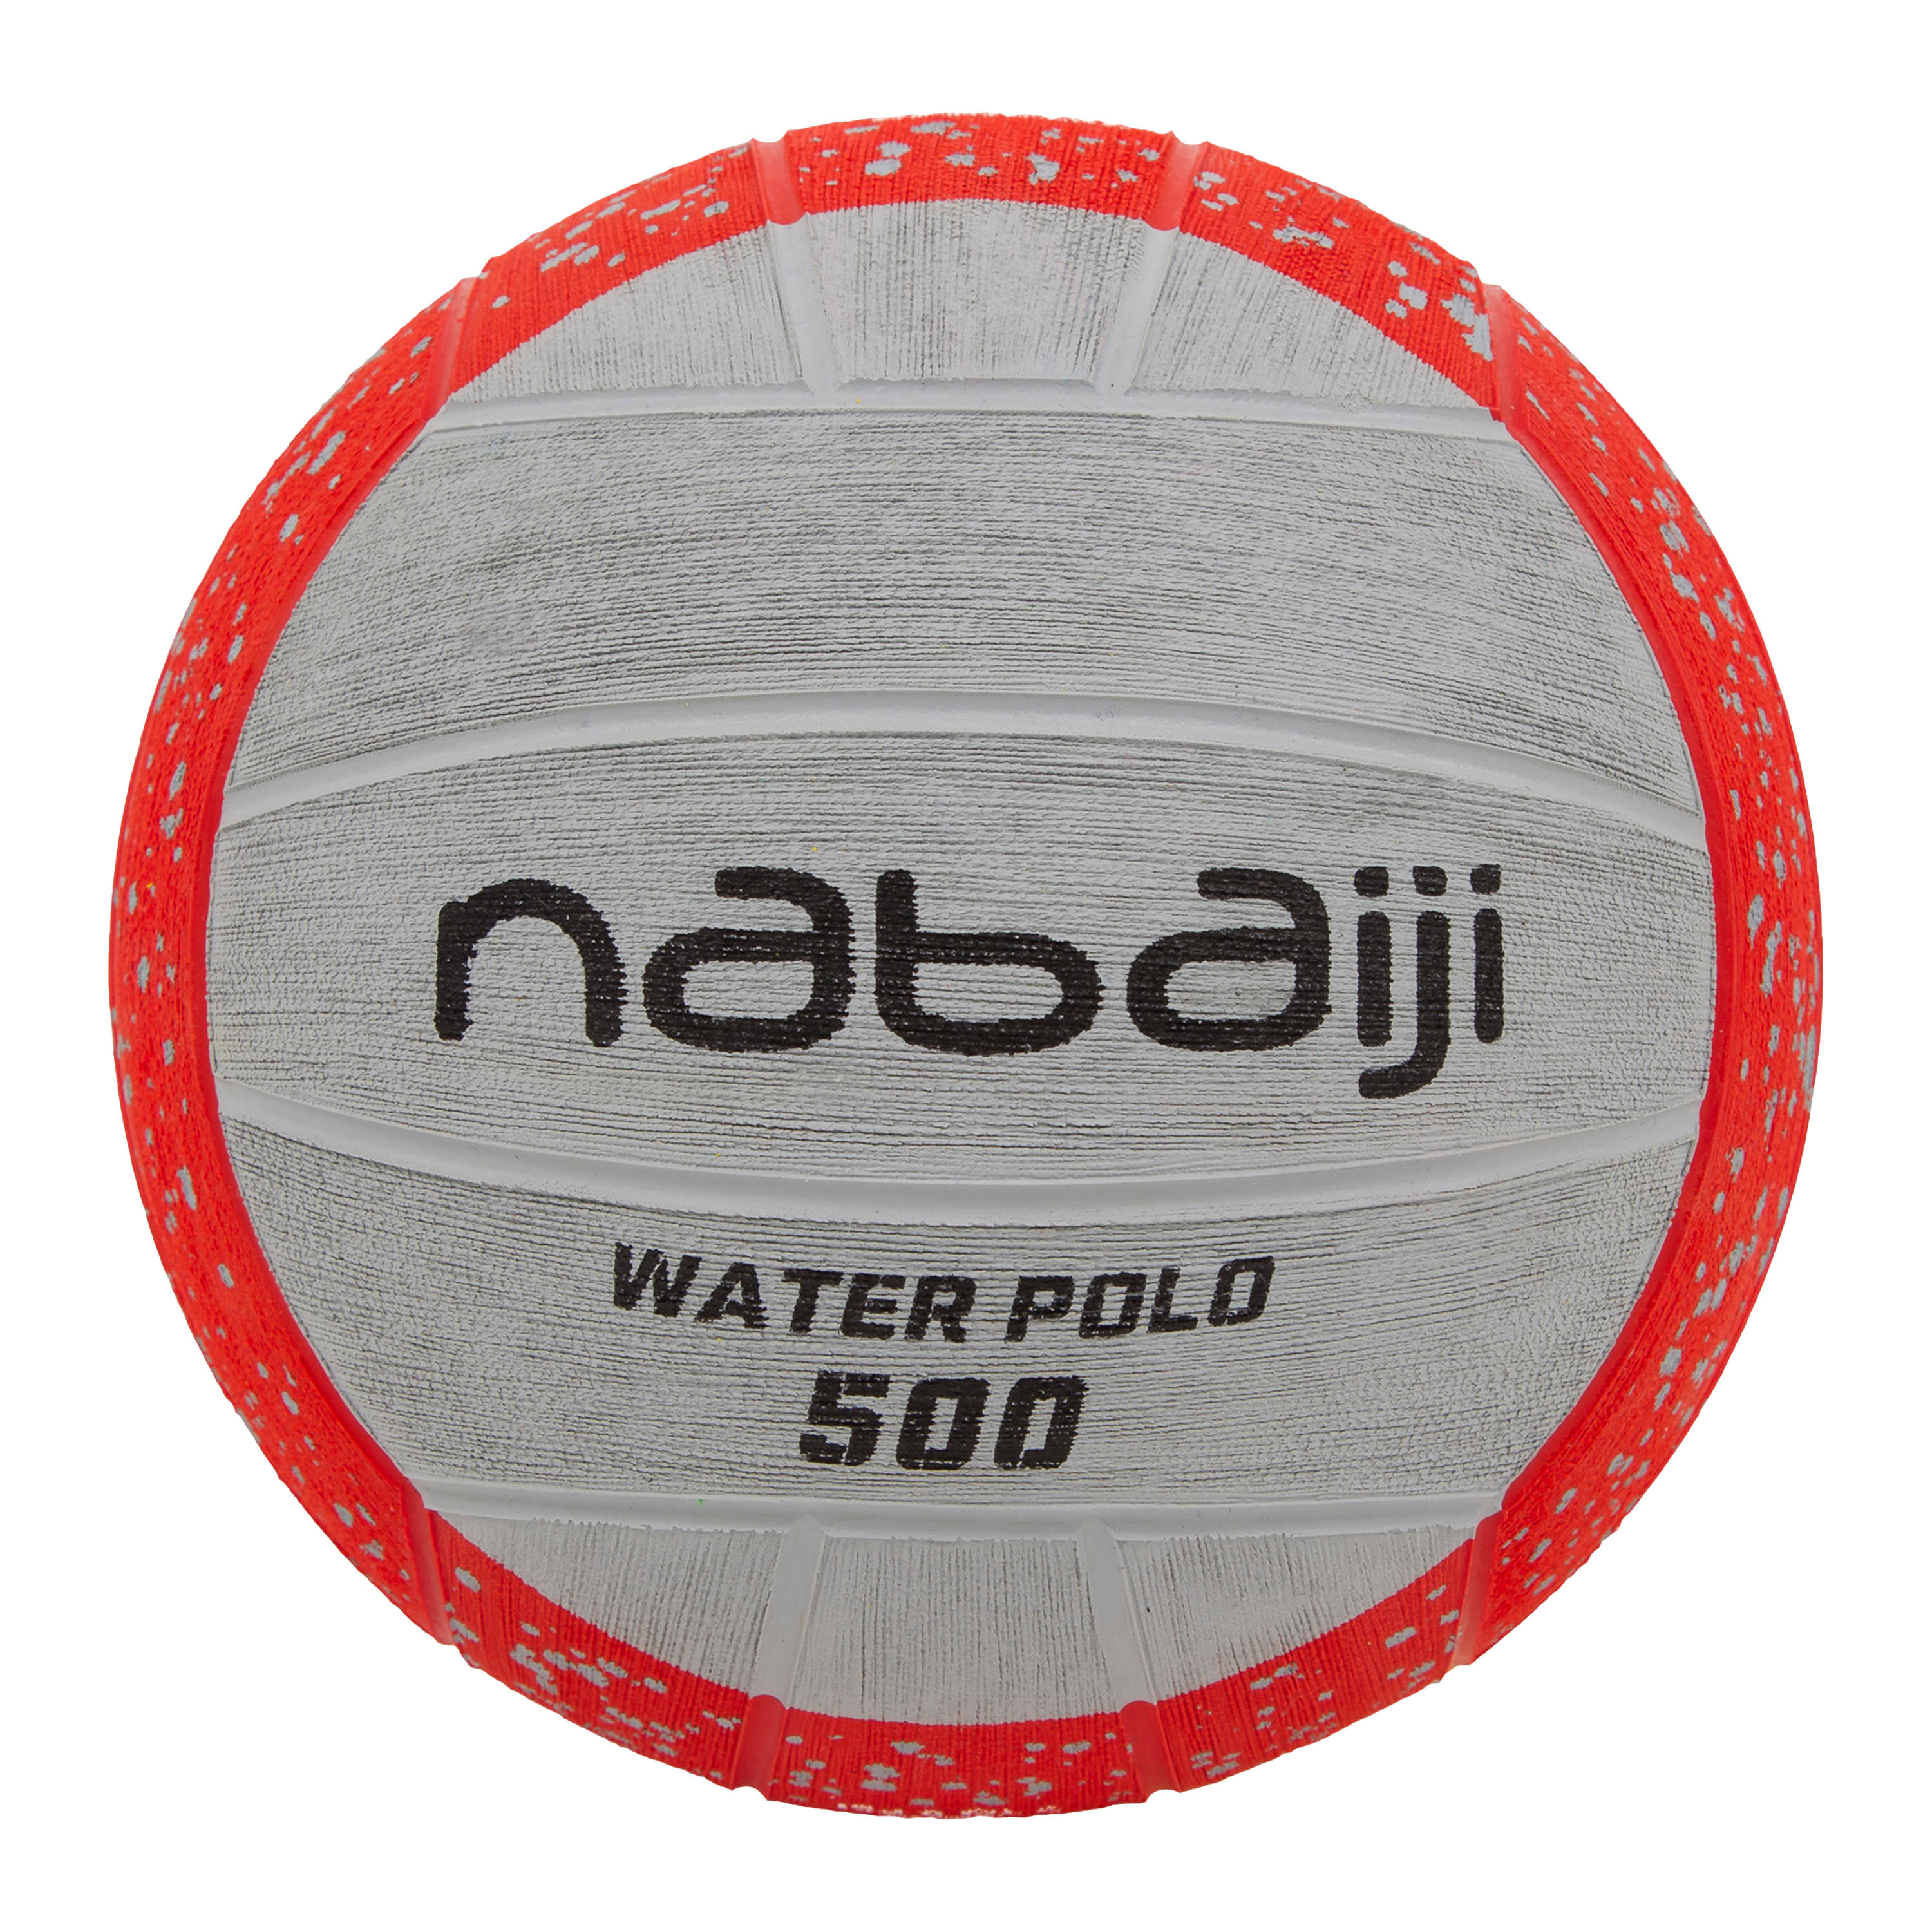 water polo ball decathlon